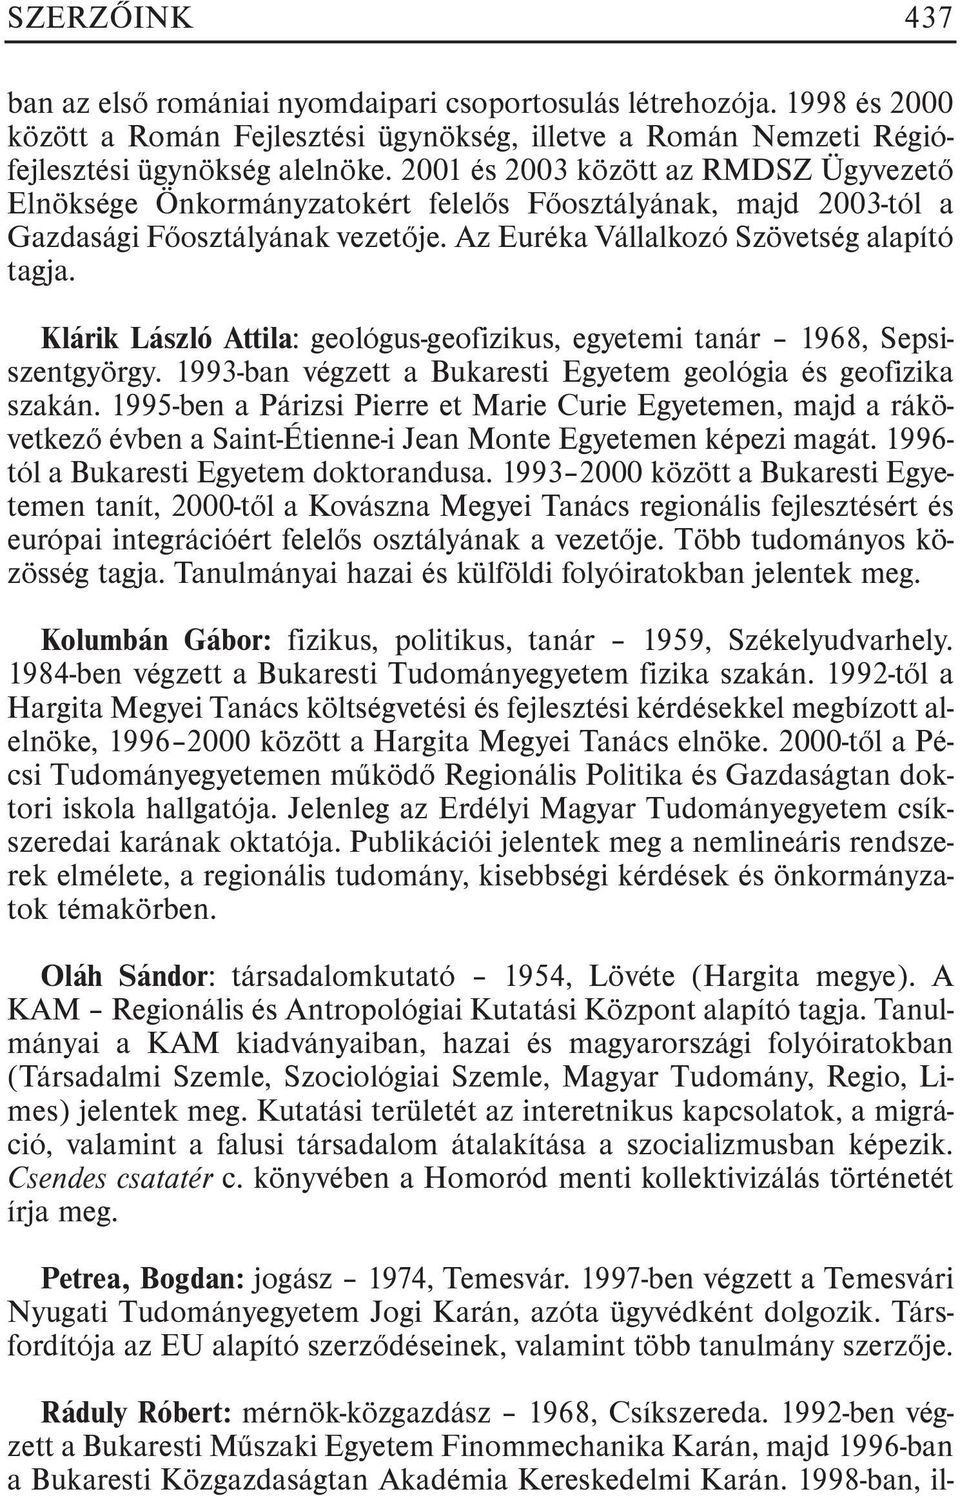 Klárik László Attila: geológus-geofizikus, egyetemi tanár 1968, Sepsiszentgyörgy. 1993-ban végzett a Bukaresti Egyetem geológia és geofizika szakán.